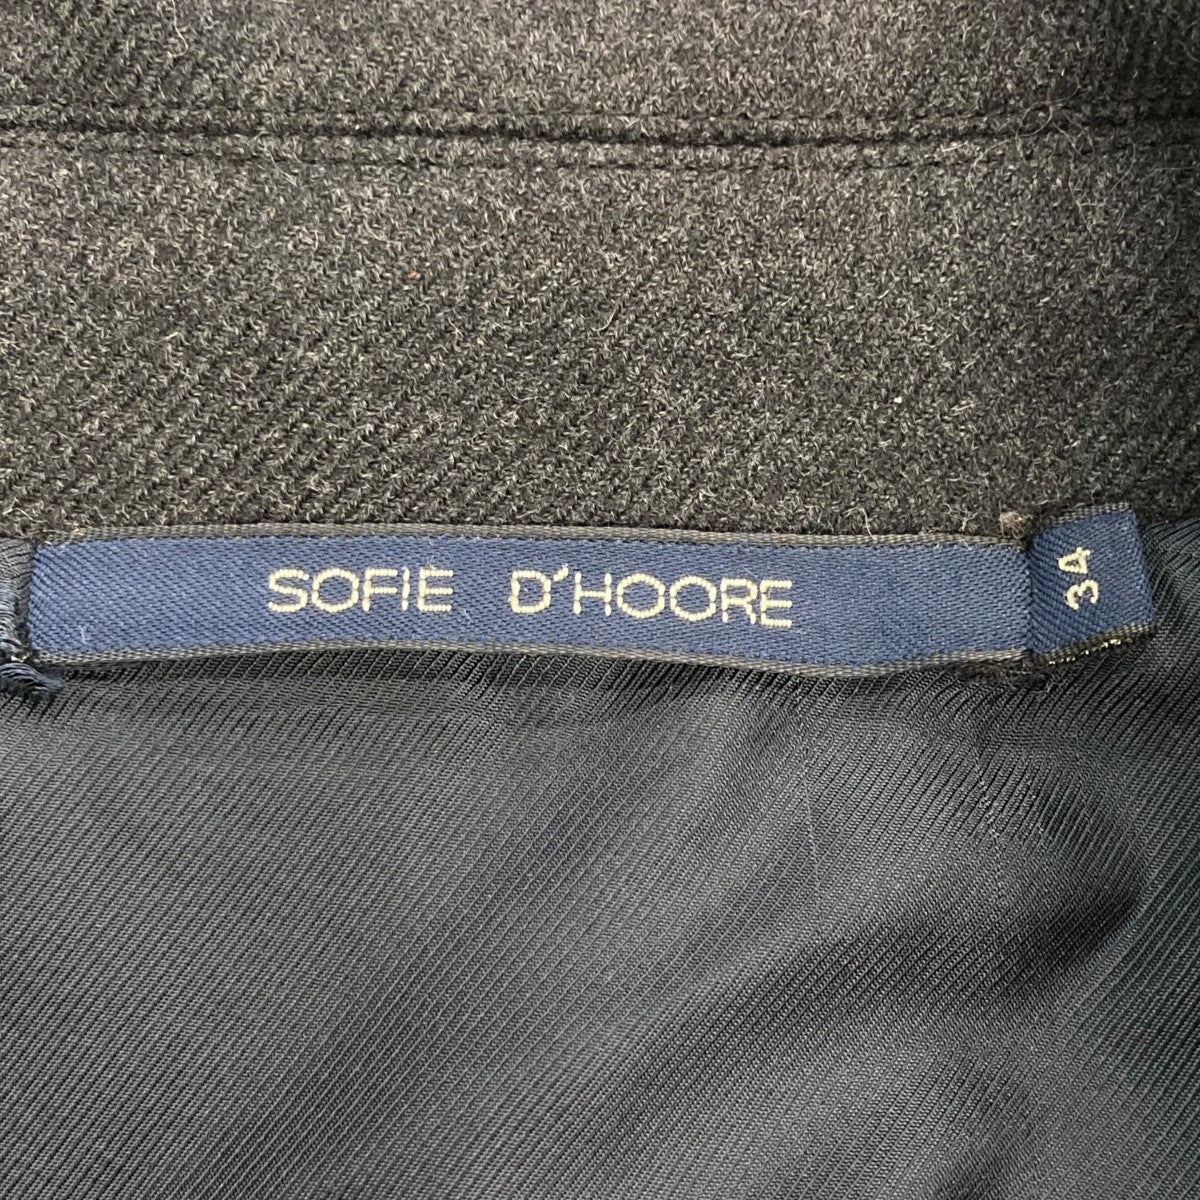 SOFIE D'HOORE(ソフィードール) ダブルステンカラーコート グレー 